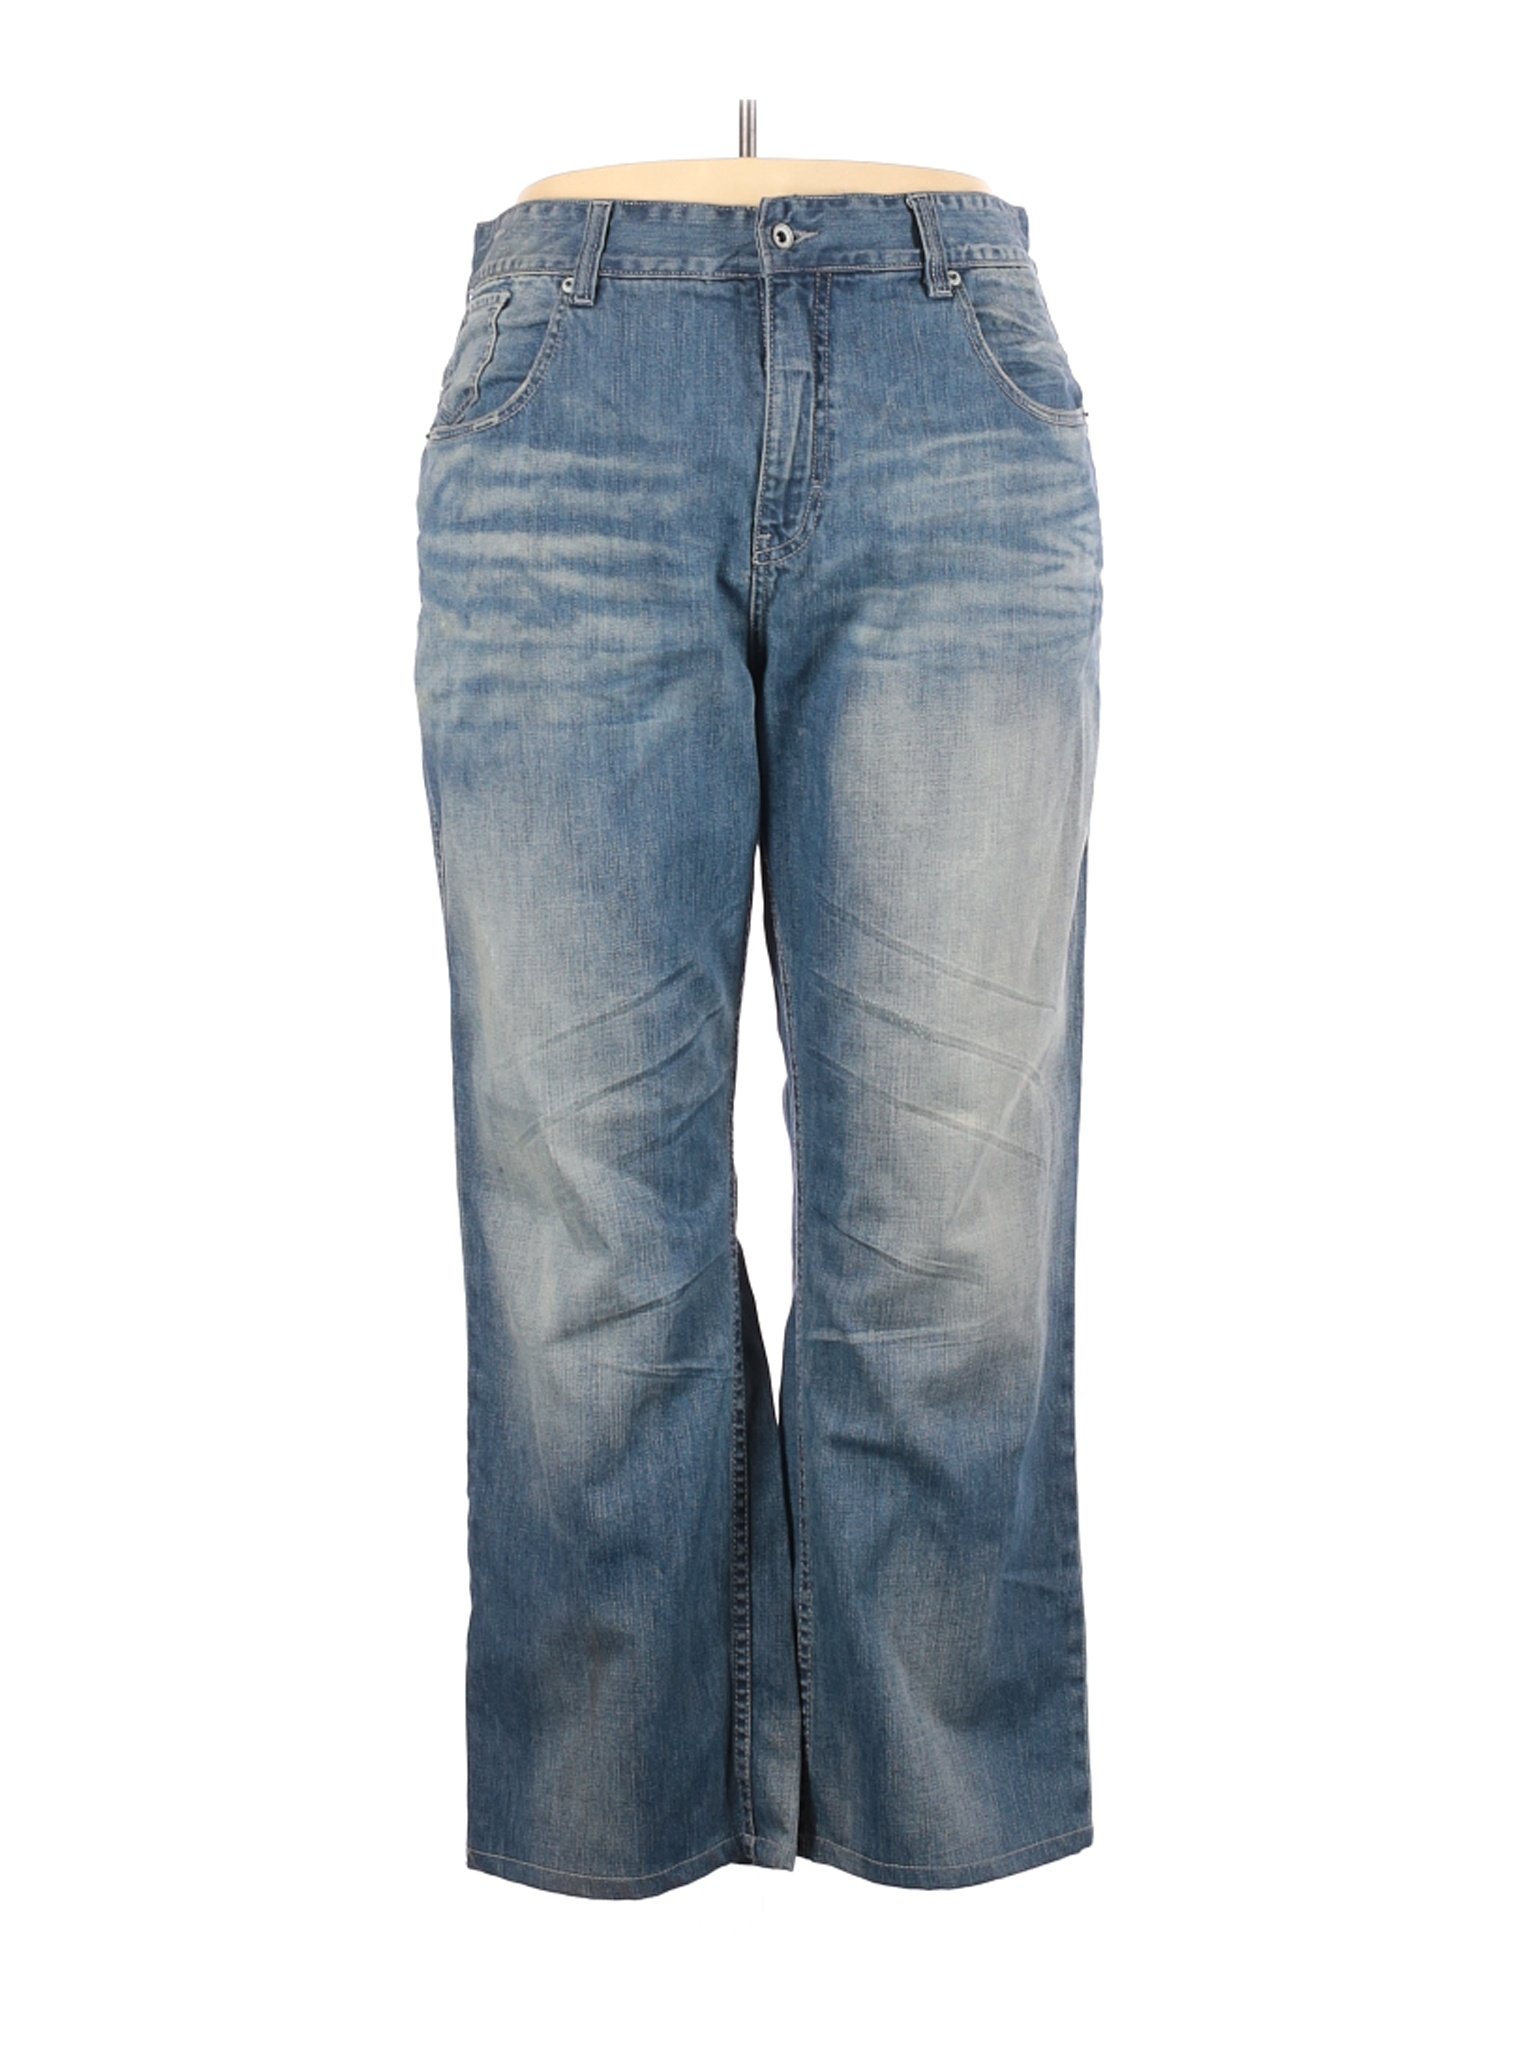 Rocawear Women Blue Jeans 42 eur | eBay